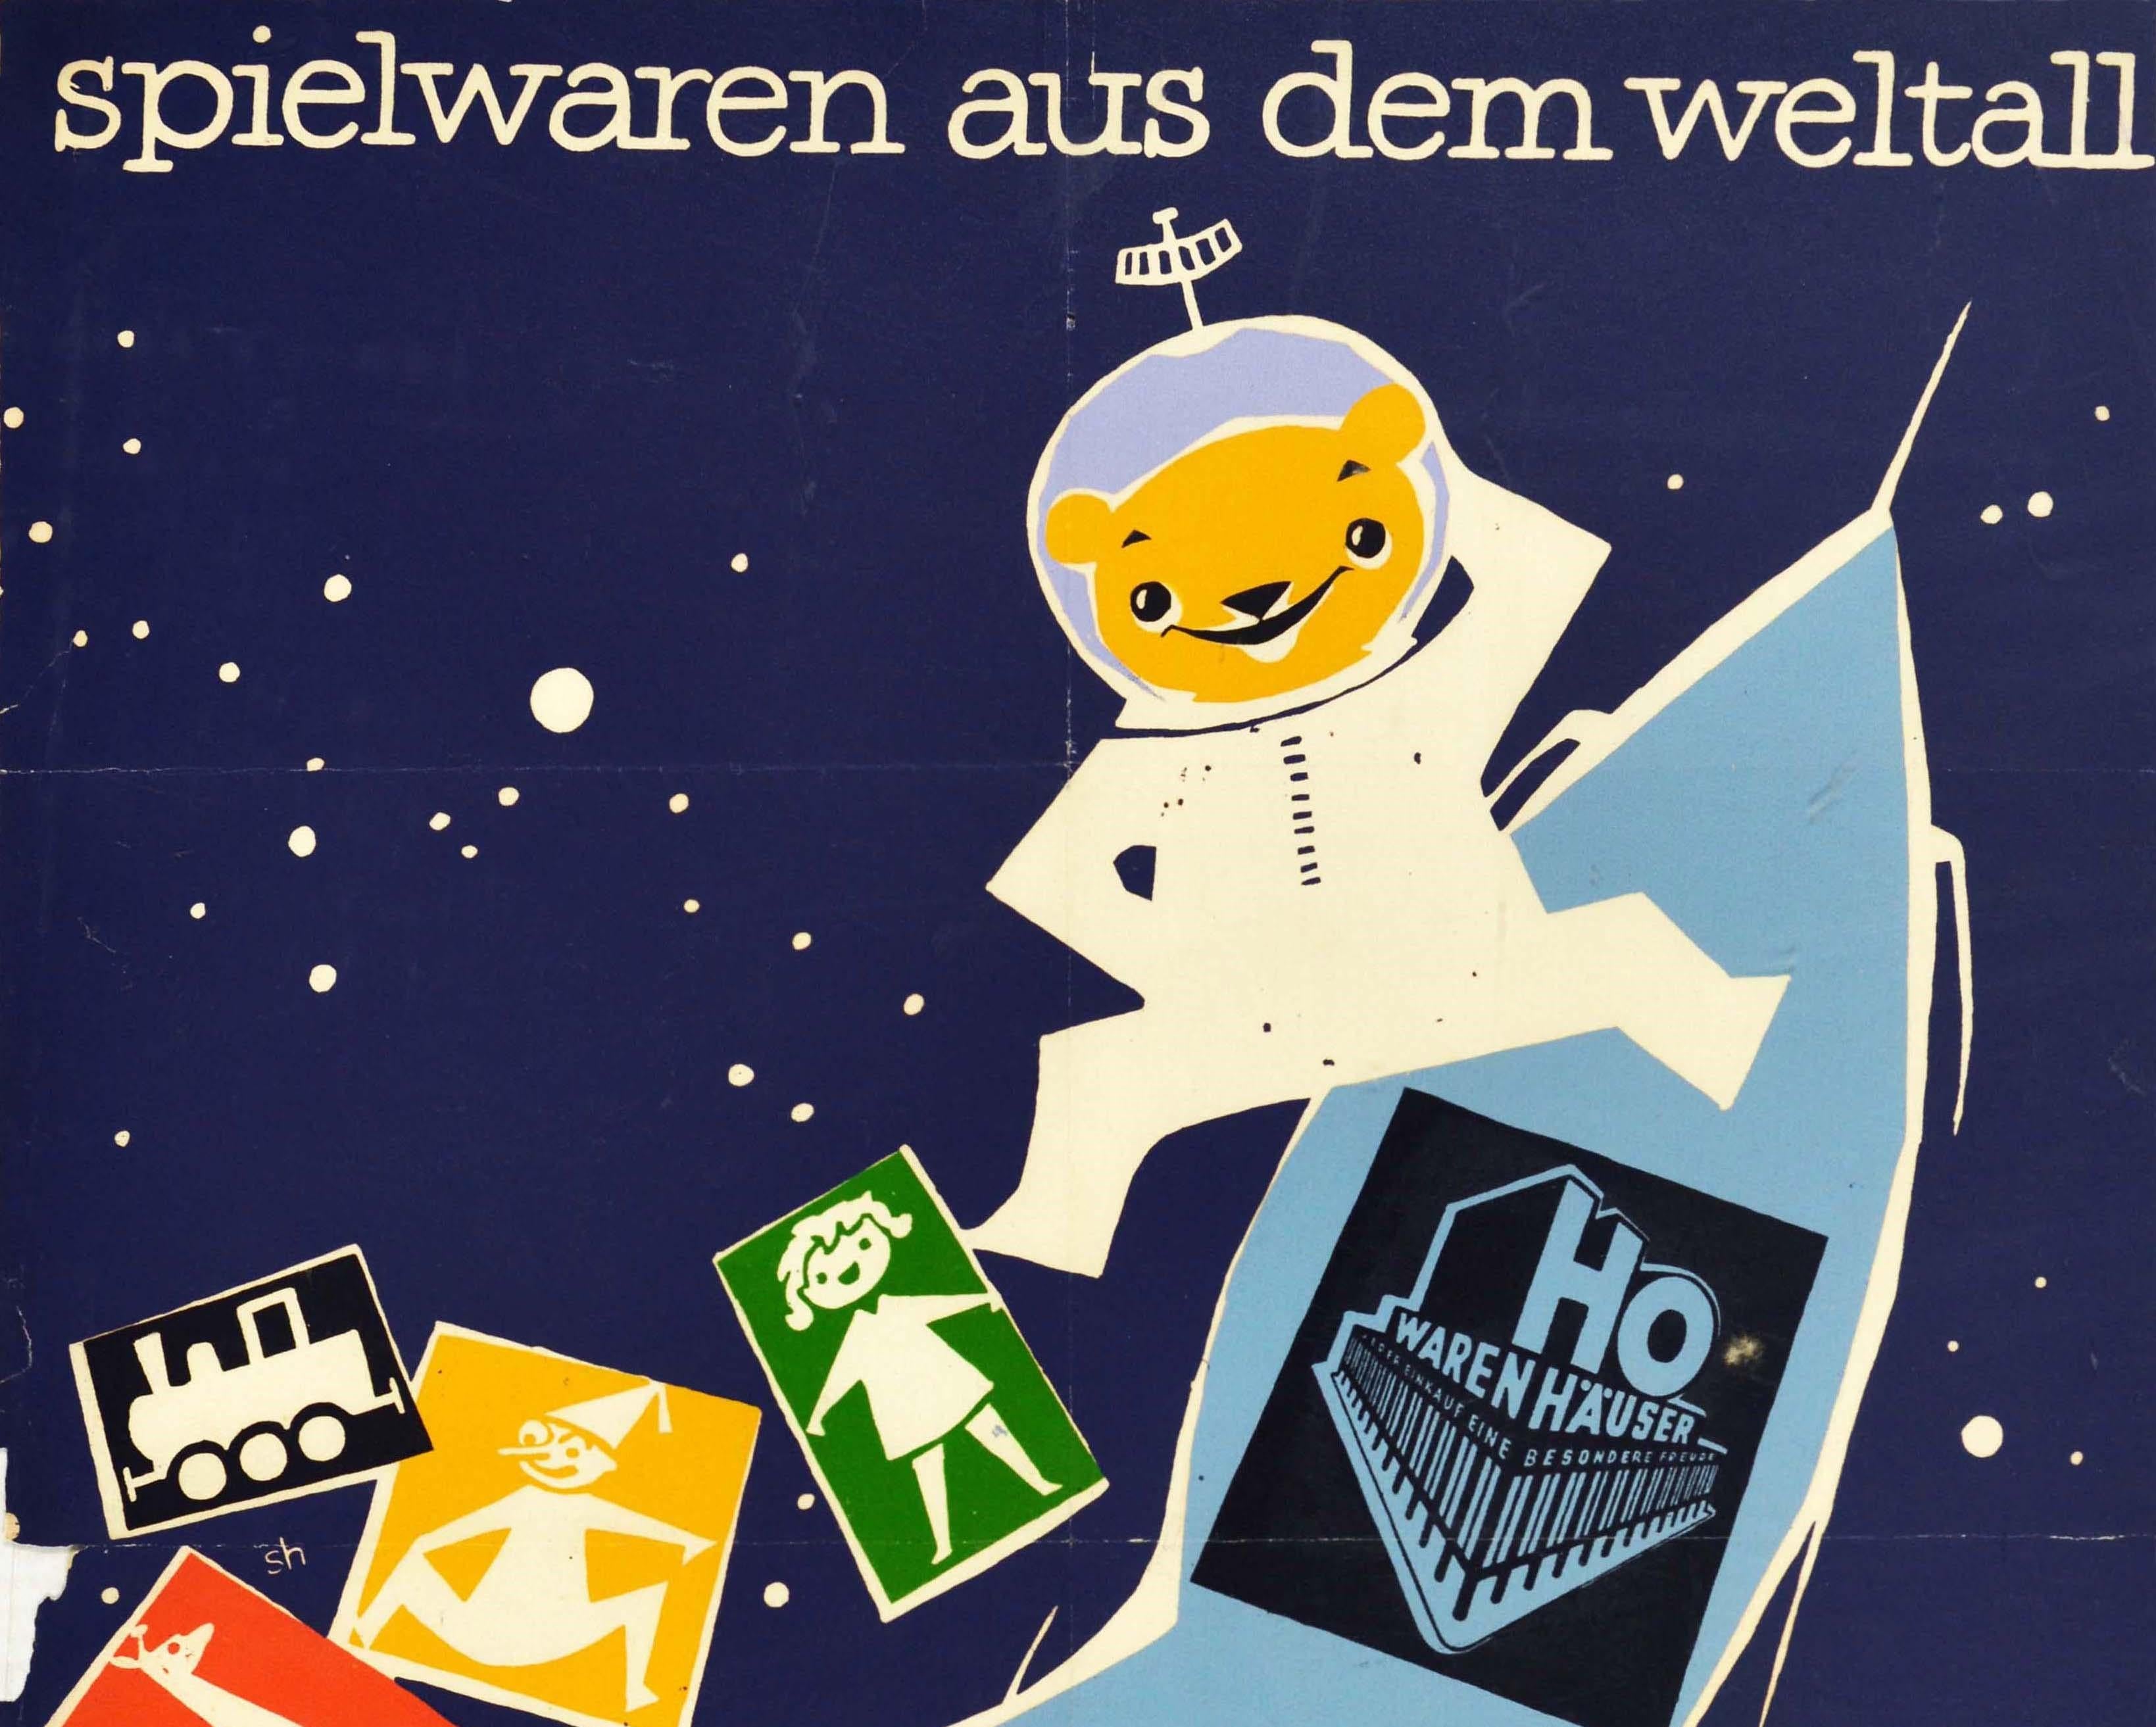 Original-Werbeplakat für Toys From Space / Spielwaren Aus Dem Weltall im Kaufhaus Ho Warenhauser in Leipzig mit einem lustigen Design, das einen Teddybären in einem Astronauten-/Kosmonauten-Raumanzug zeigt, der den Betrachter anlächelt, mit einem